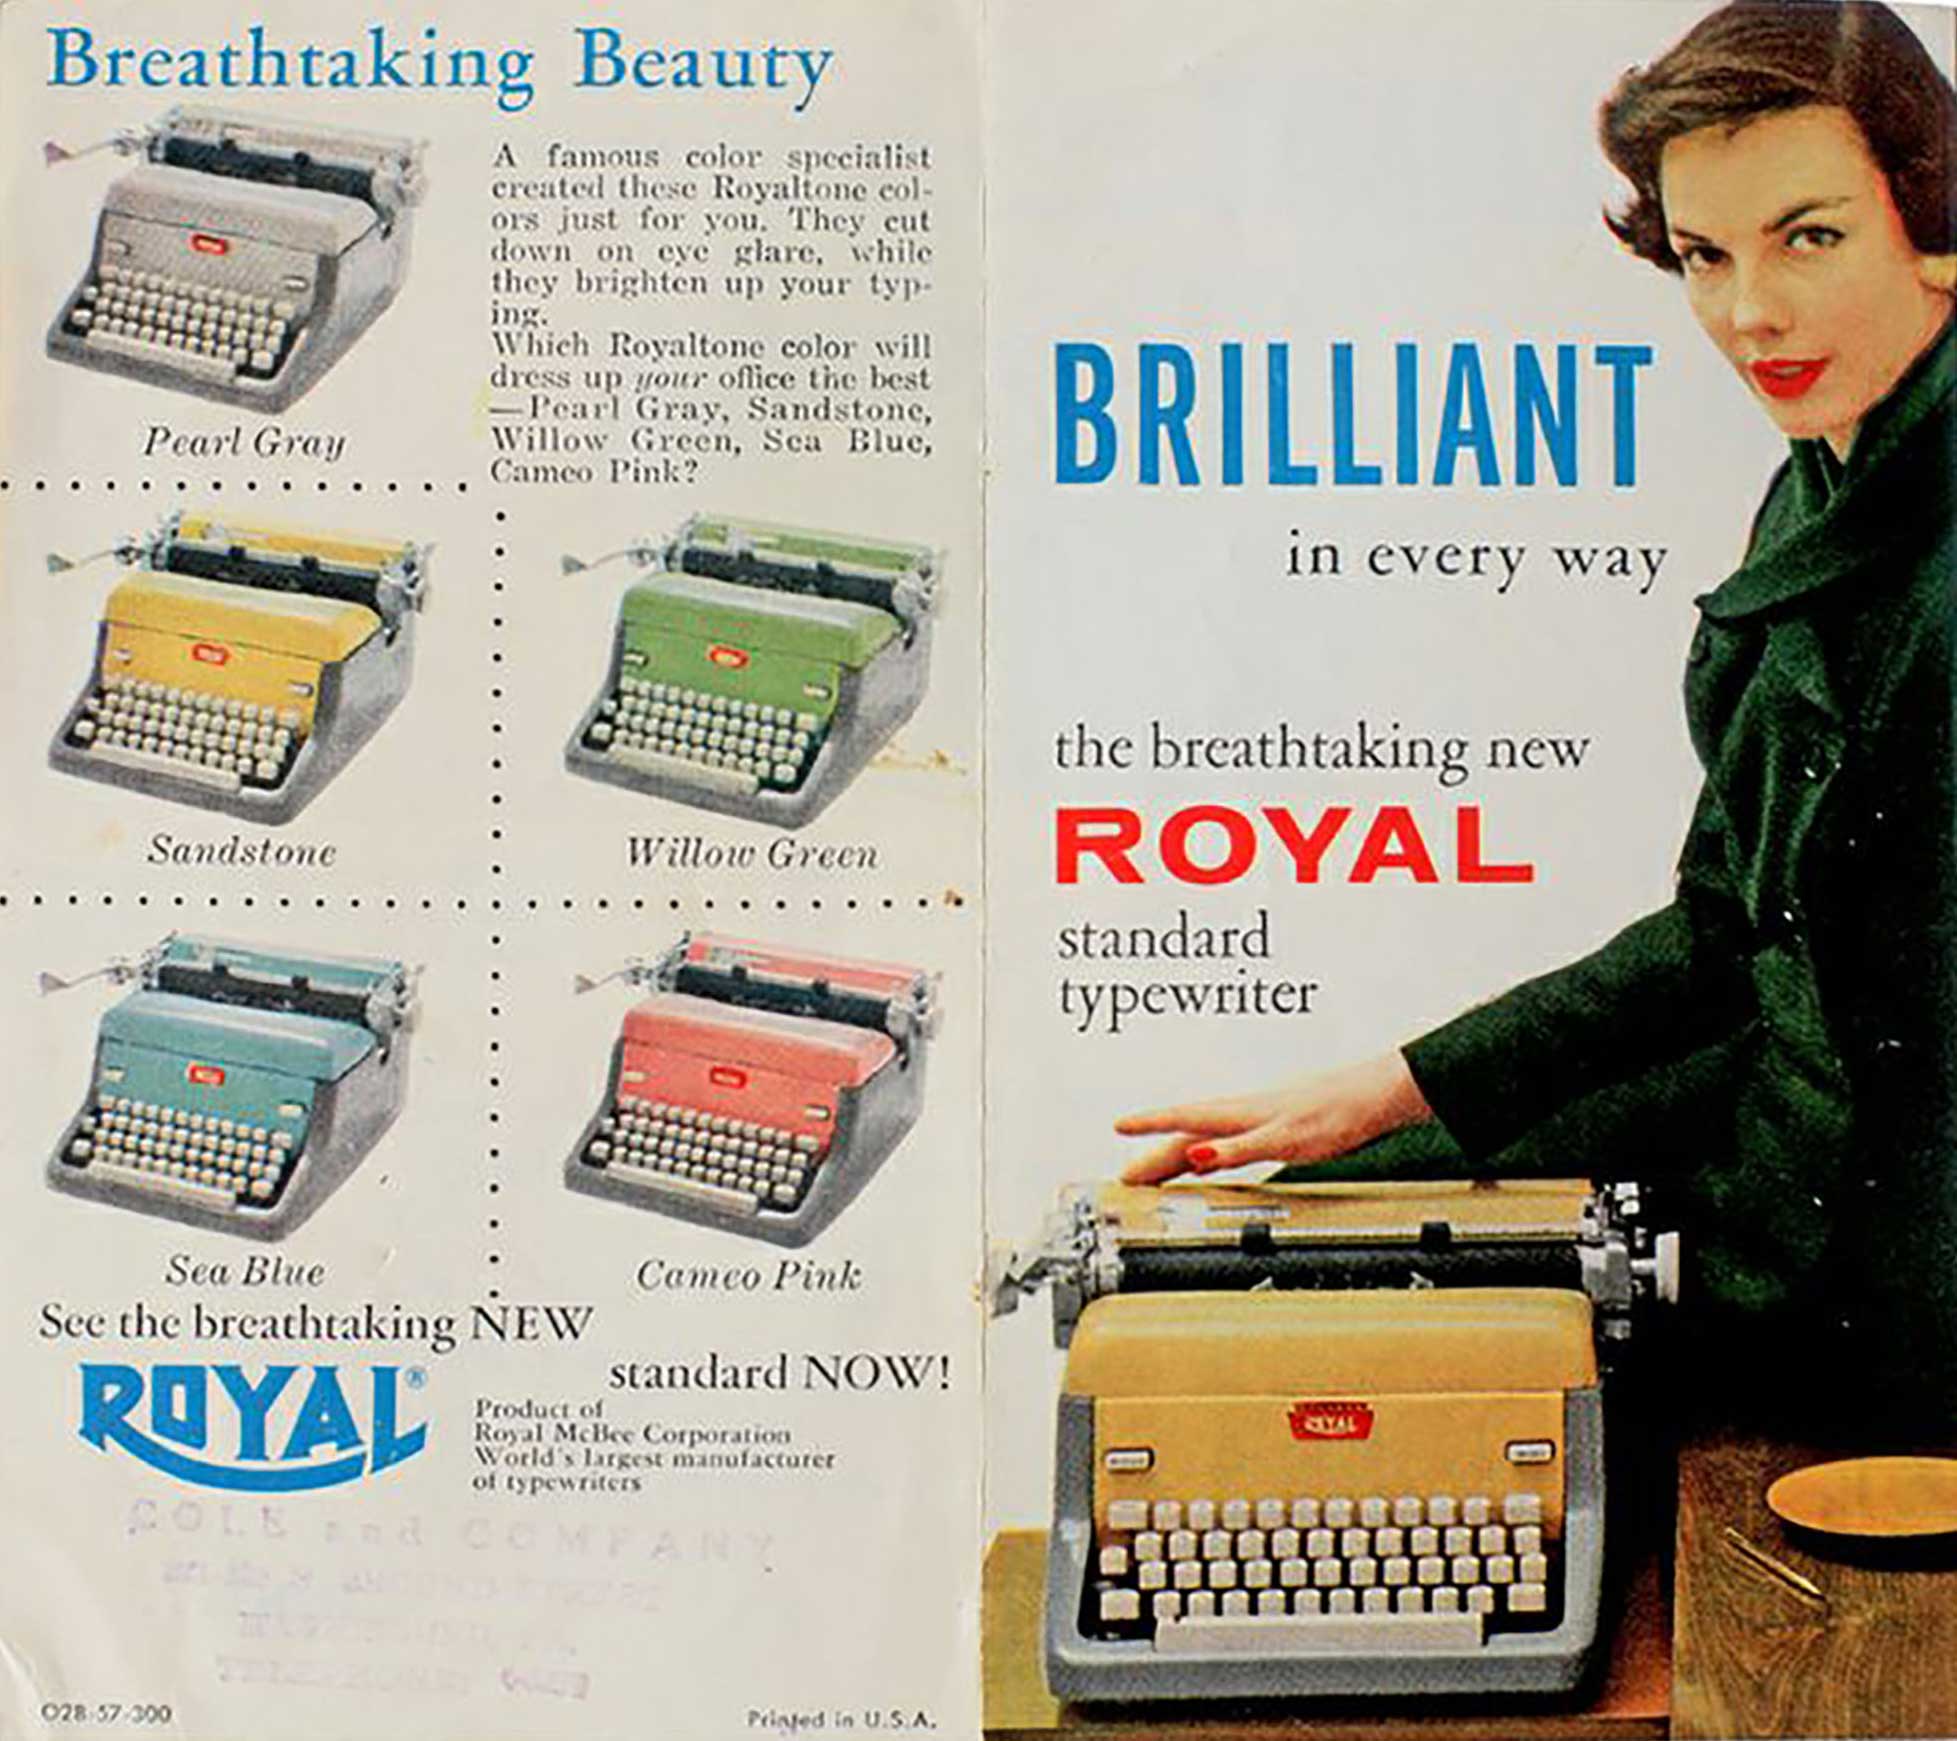 Royal standard typewriter